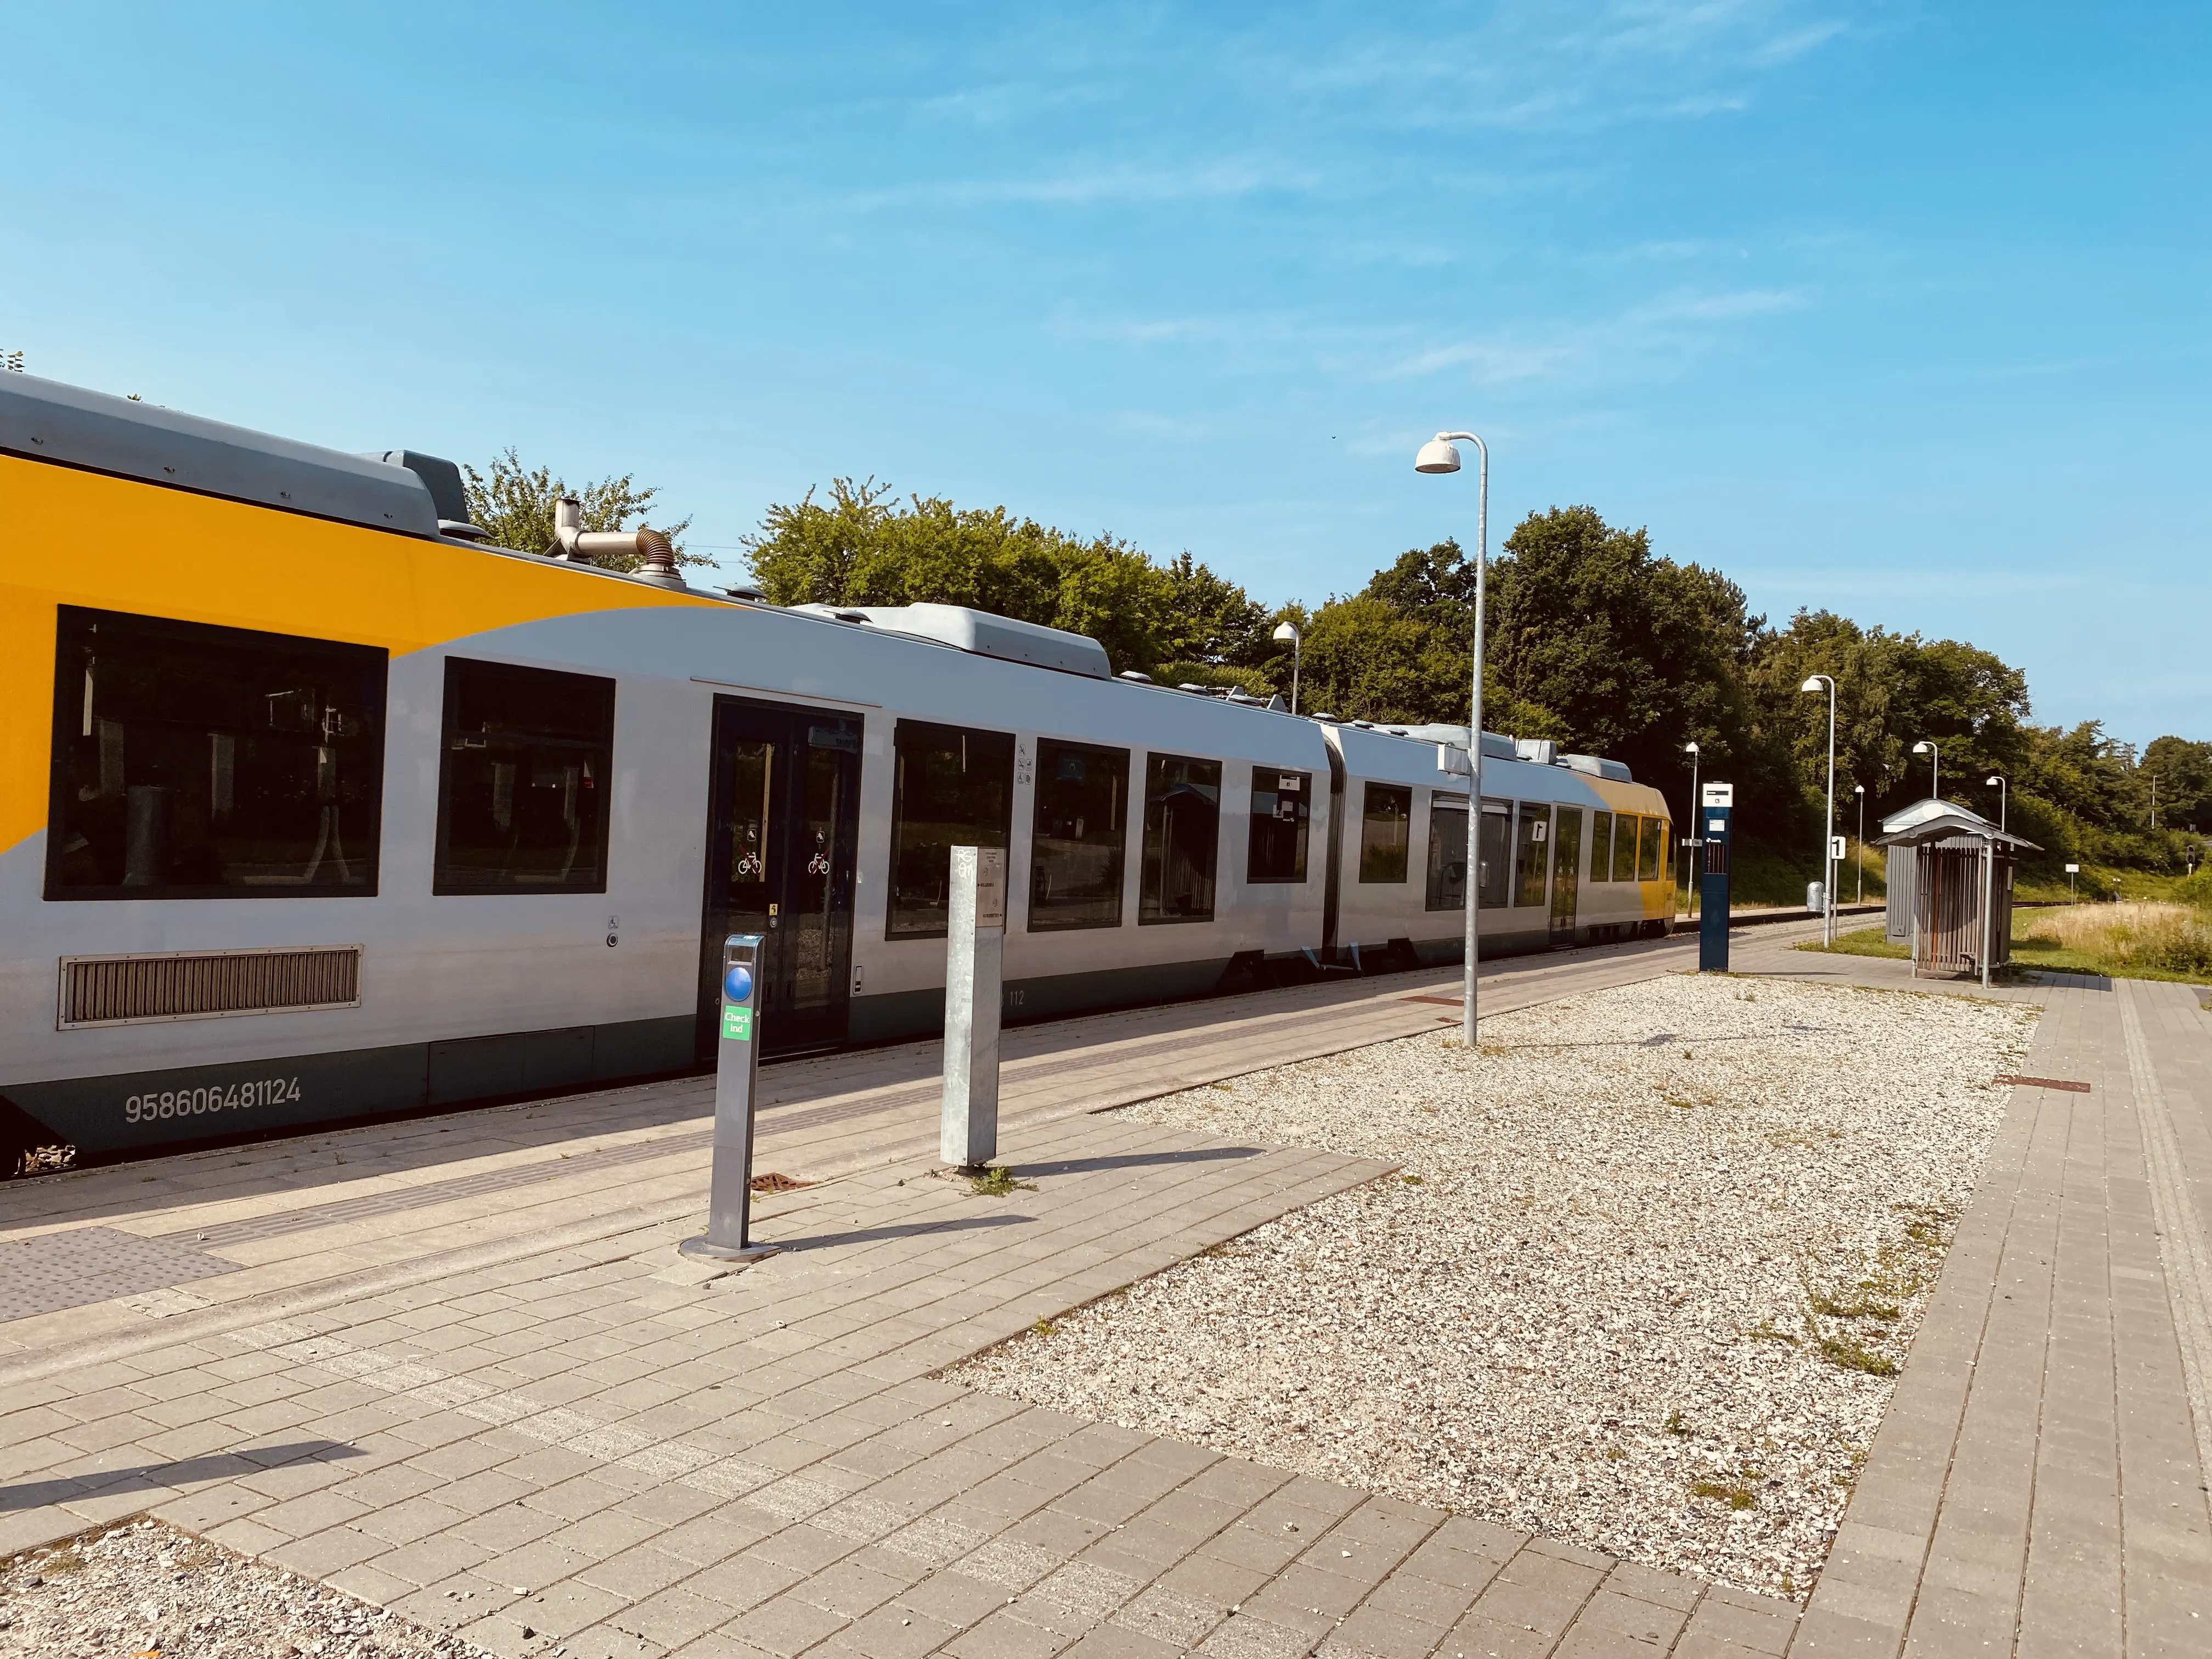 Billede af tog ud for Gørløse Station.